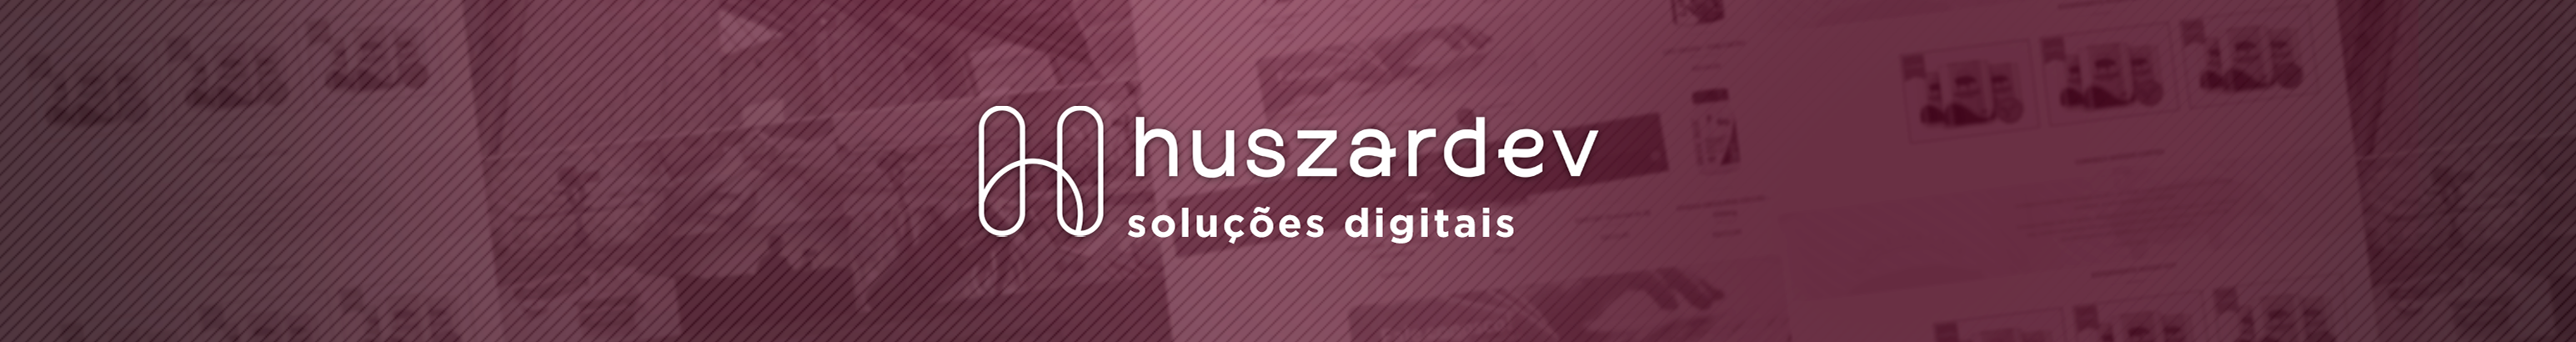 Felipe Huszars profilbanner